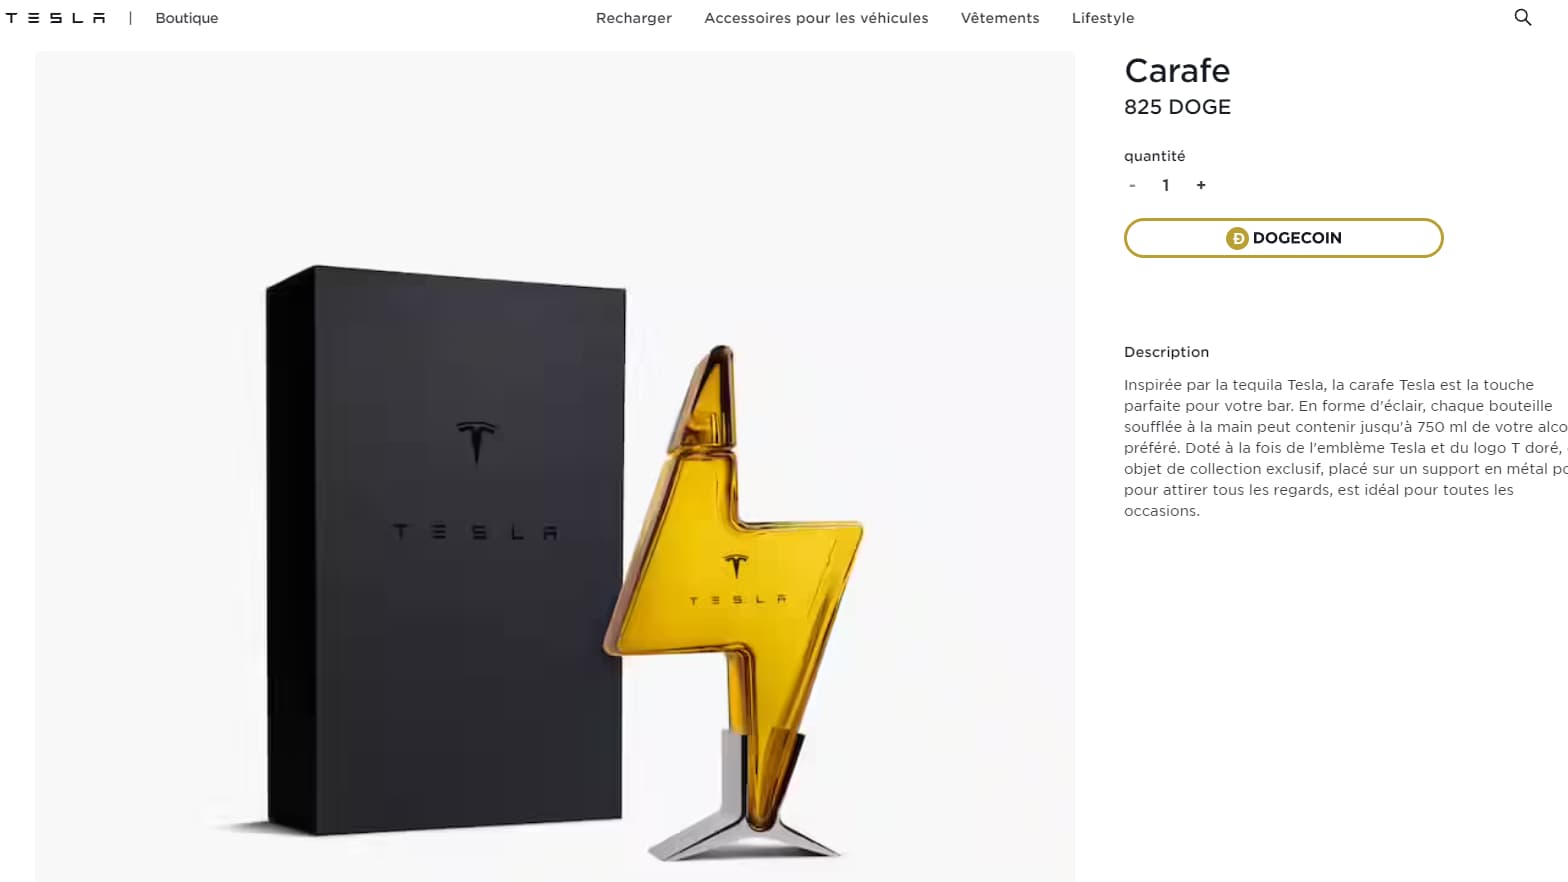 Pour acheter ces accessoires Tesla, il faut payer uniquement en  cryptomonnaie